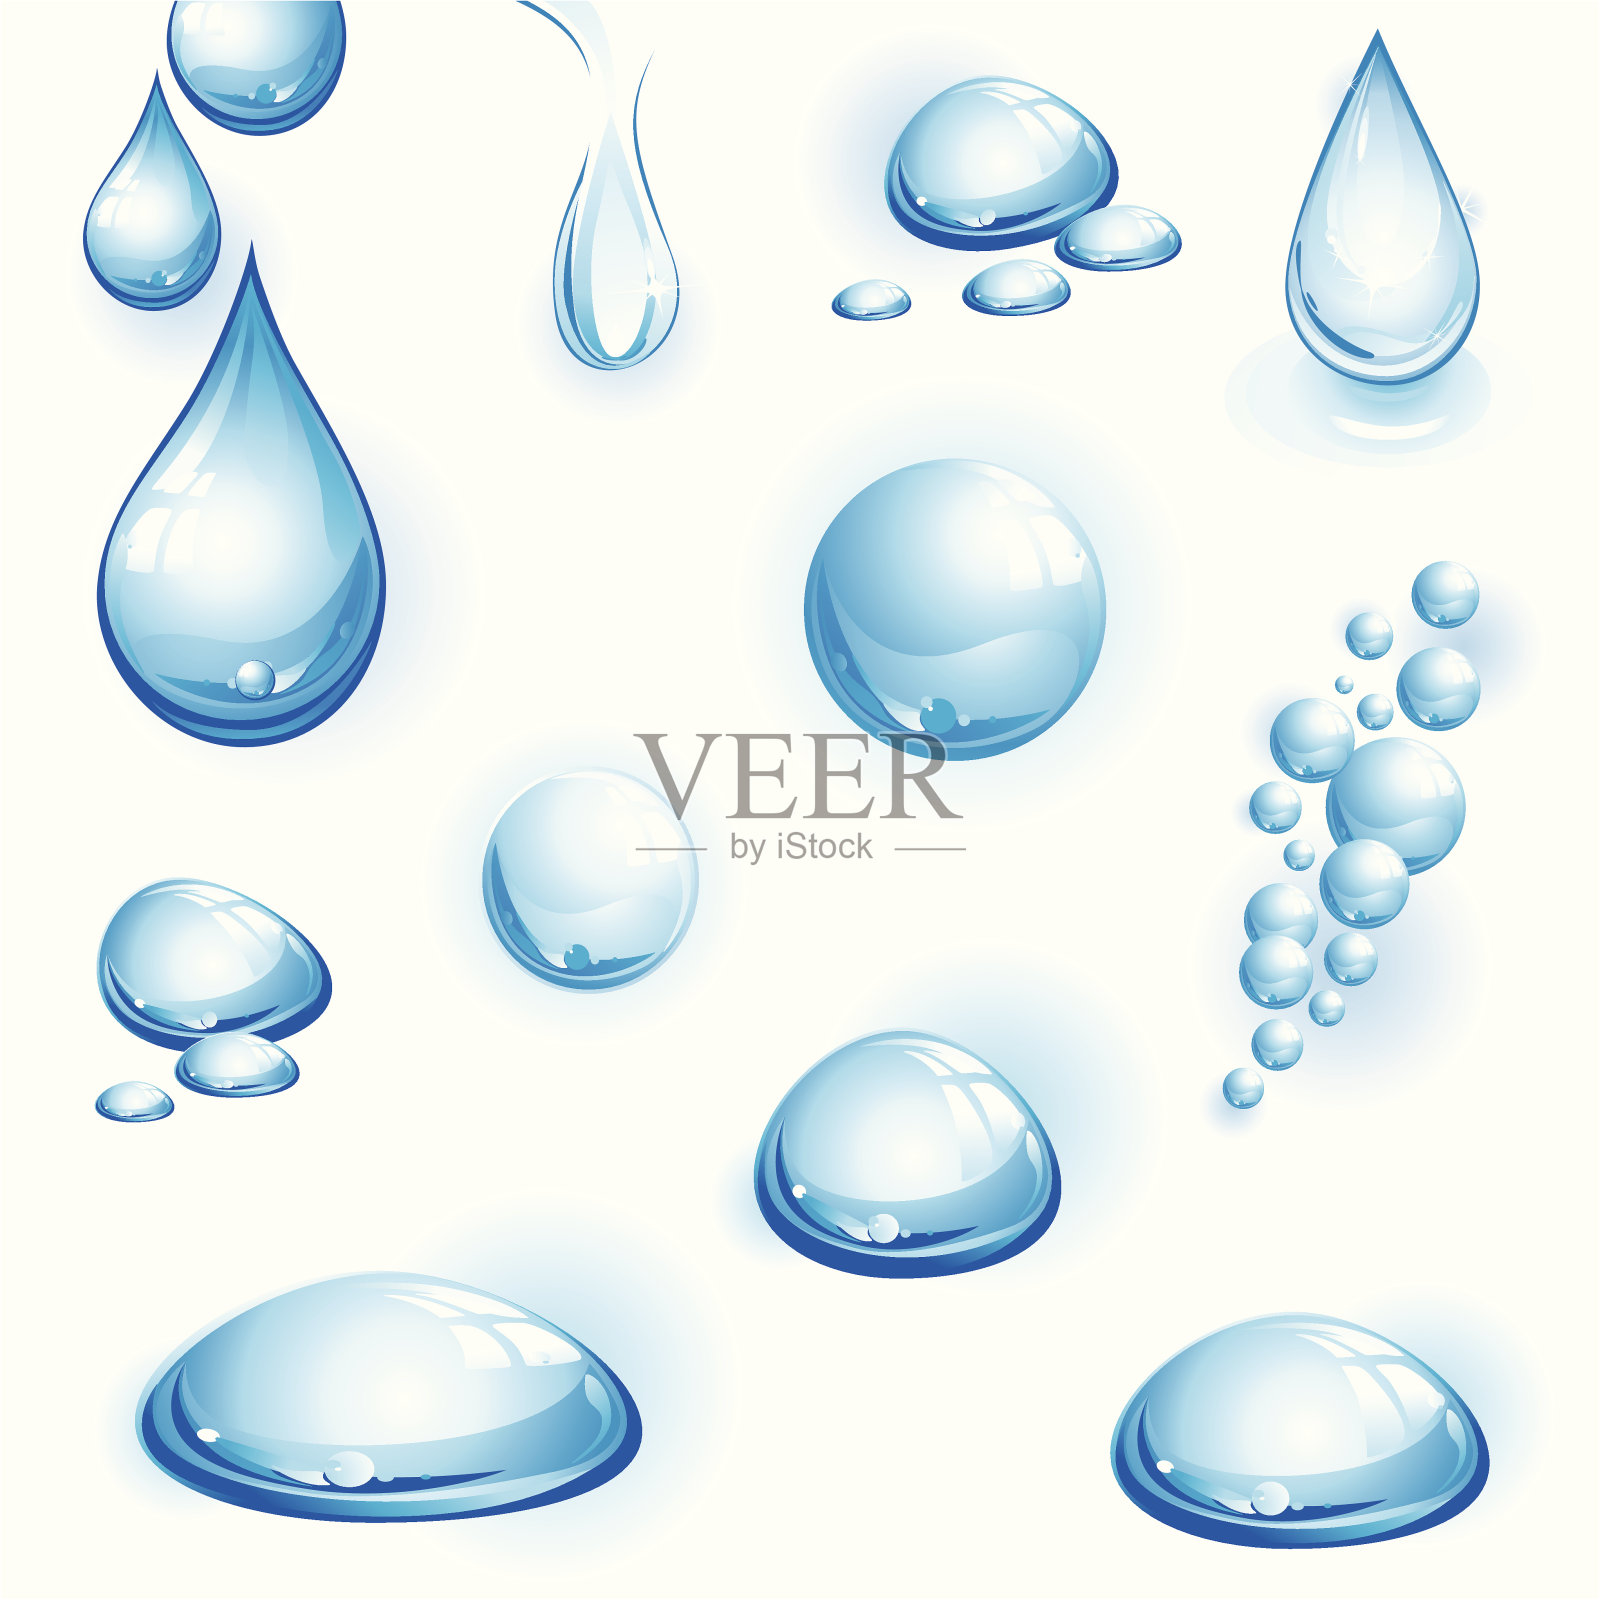 一幅不同图案的水滴图插画图片素材